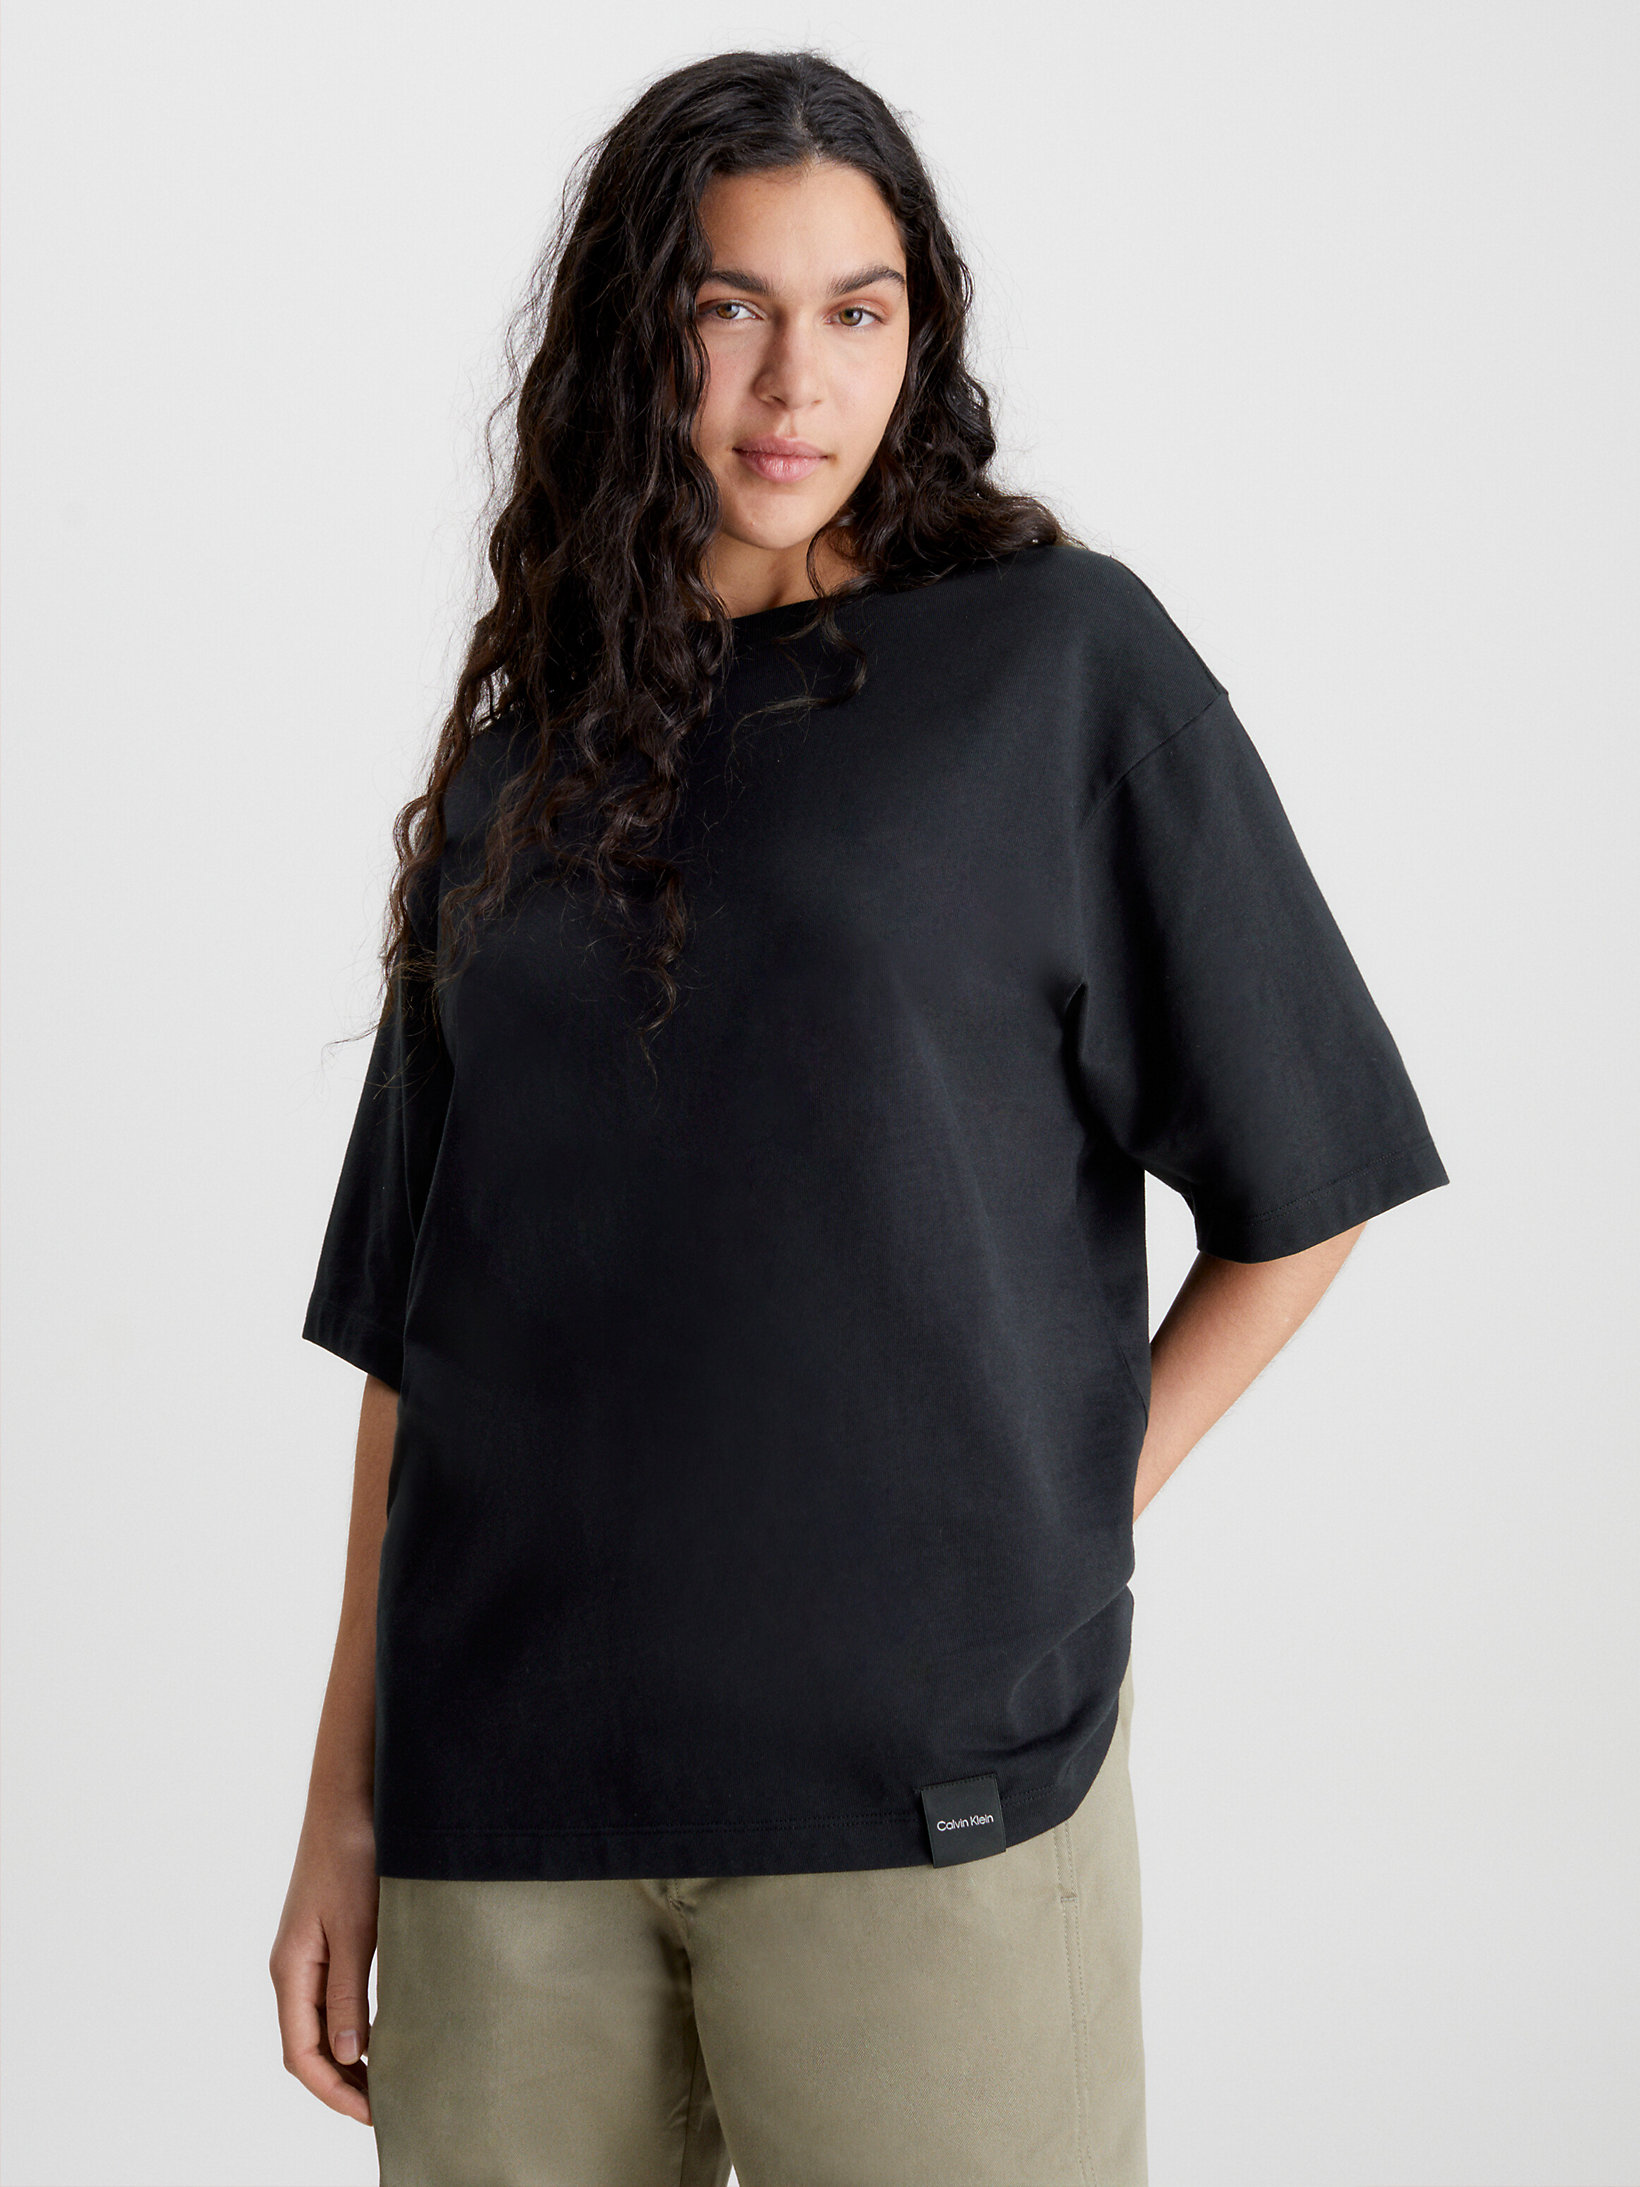 Black Beauty > Lässiges Unisex-T-Shirt – CK Standards > undefined unisex - Calvin Klein